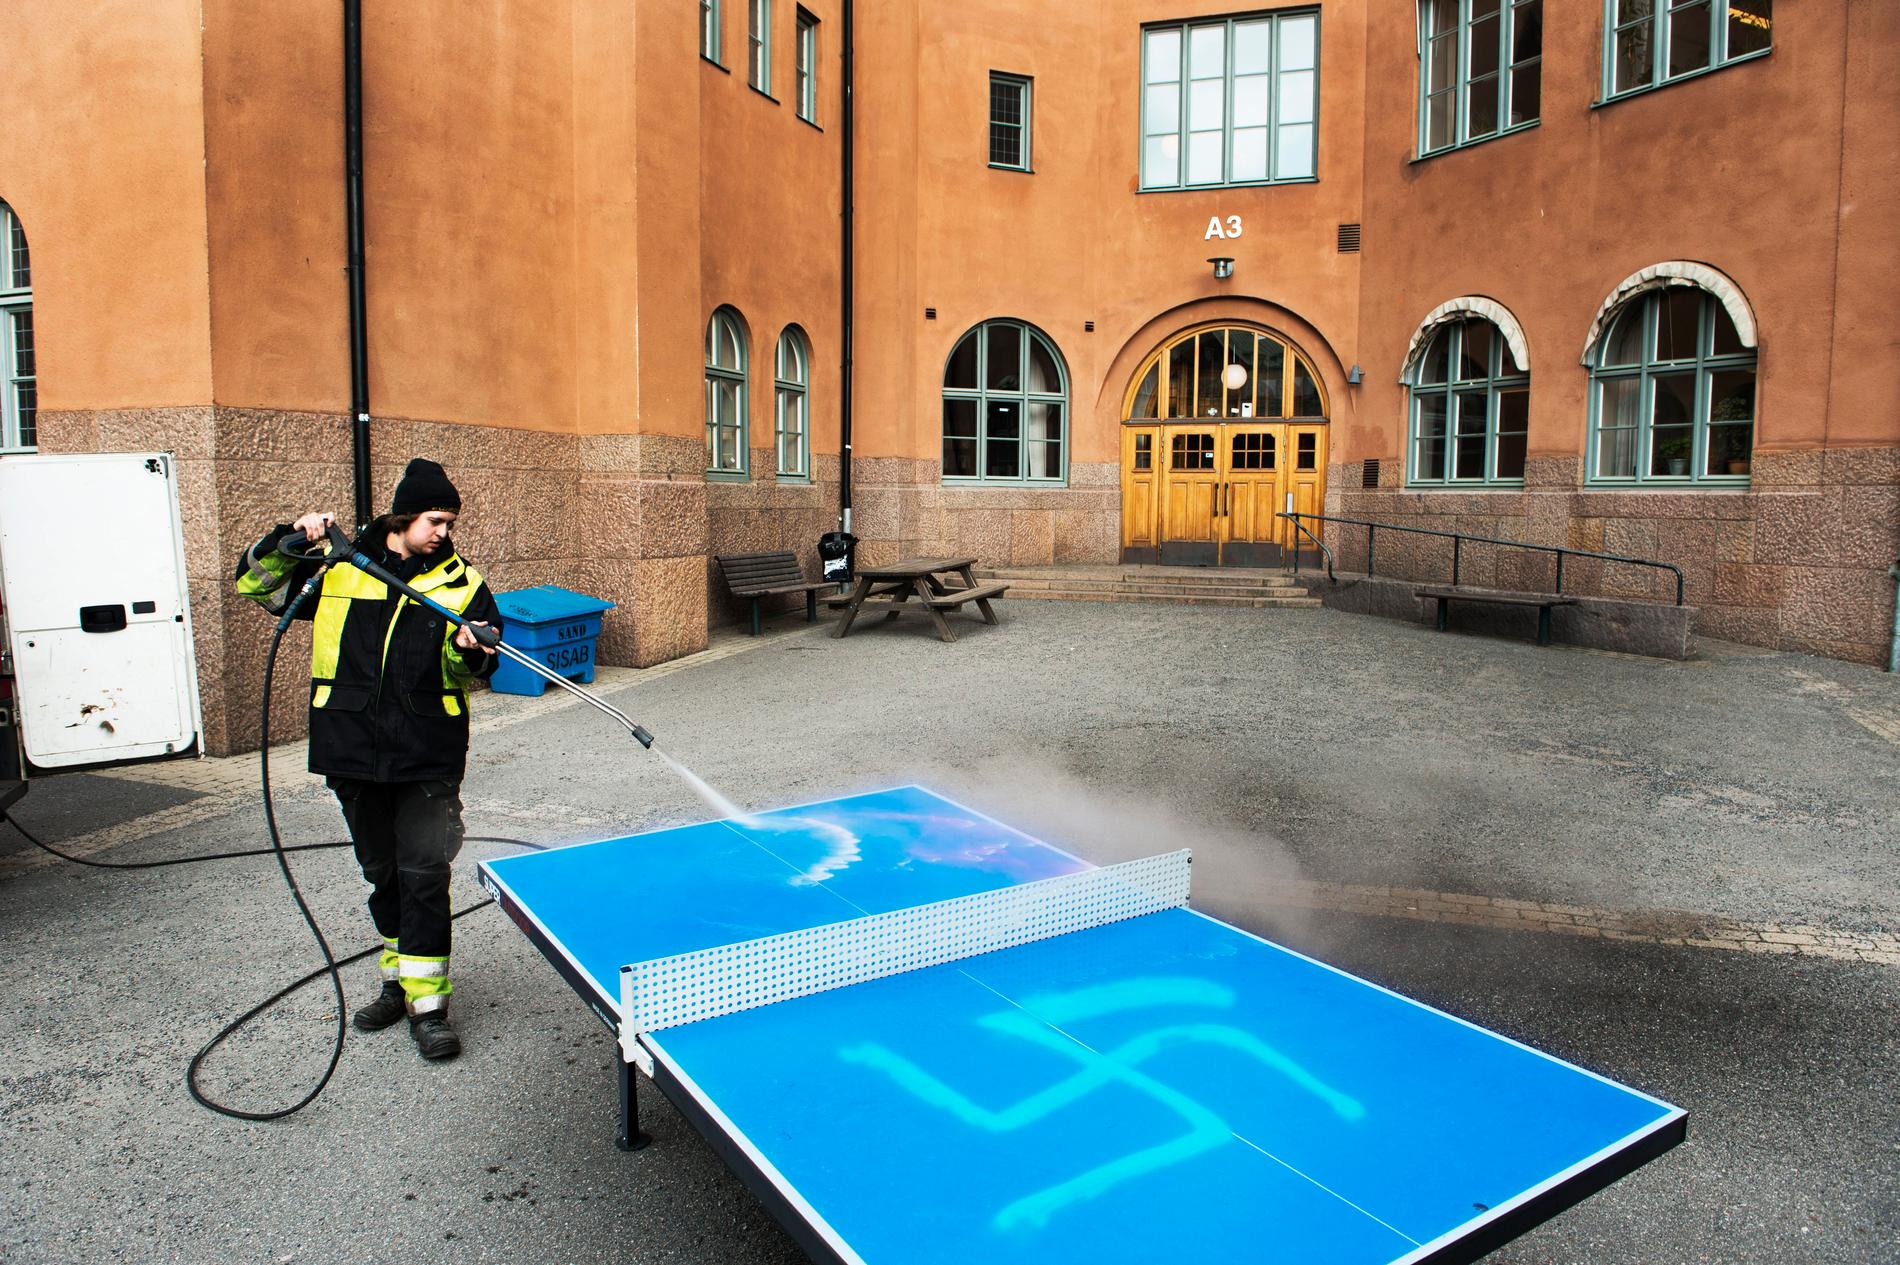 Brottet skadegörelse/klotter var den näst vanligaste brottstypen bland polisanmälda brott med hatbrottsmotiv i Sverige under 2018. Arkivbild.